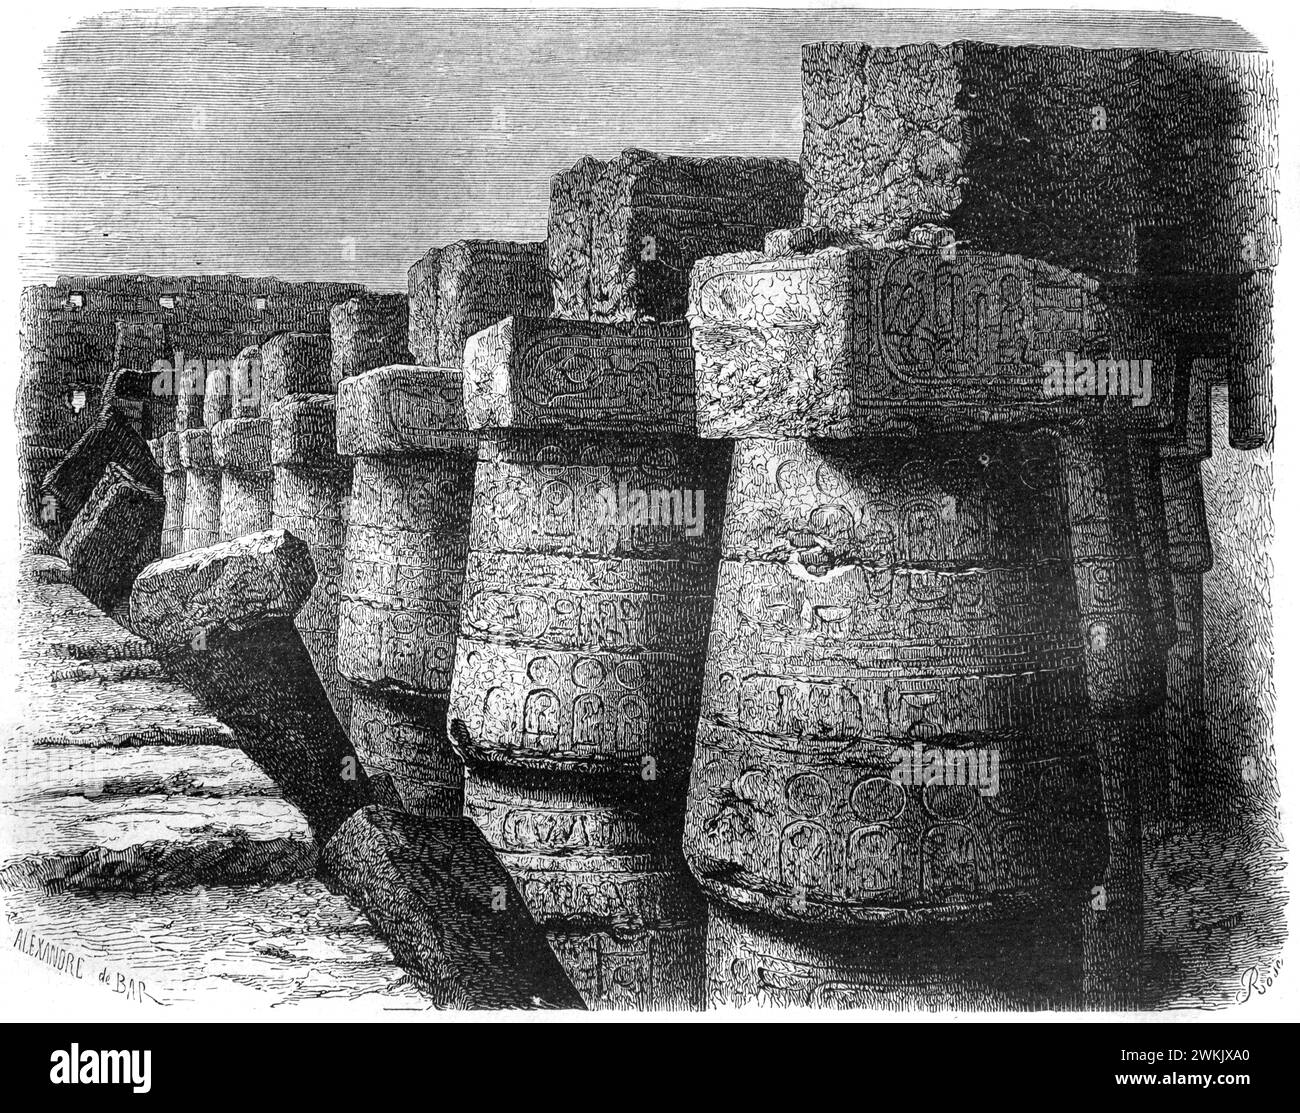 Imponenti colonne di pietra con motivi geroglifici nelle antiche rovine del complesso del tempio di Karnak El-Karnak Luxur Egitto. Incisione vintage o storica o illustrazione 1963. Foto Stock